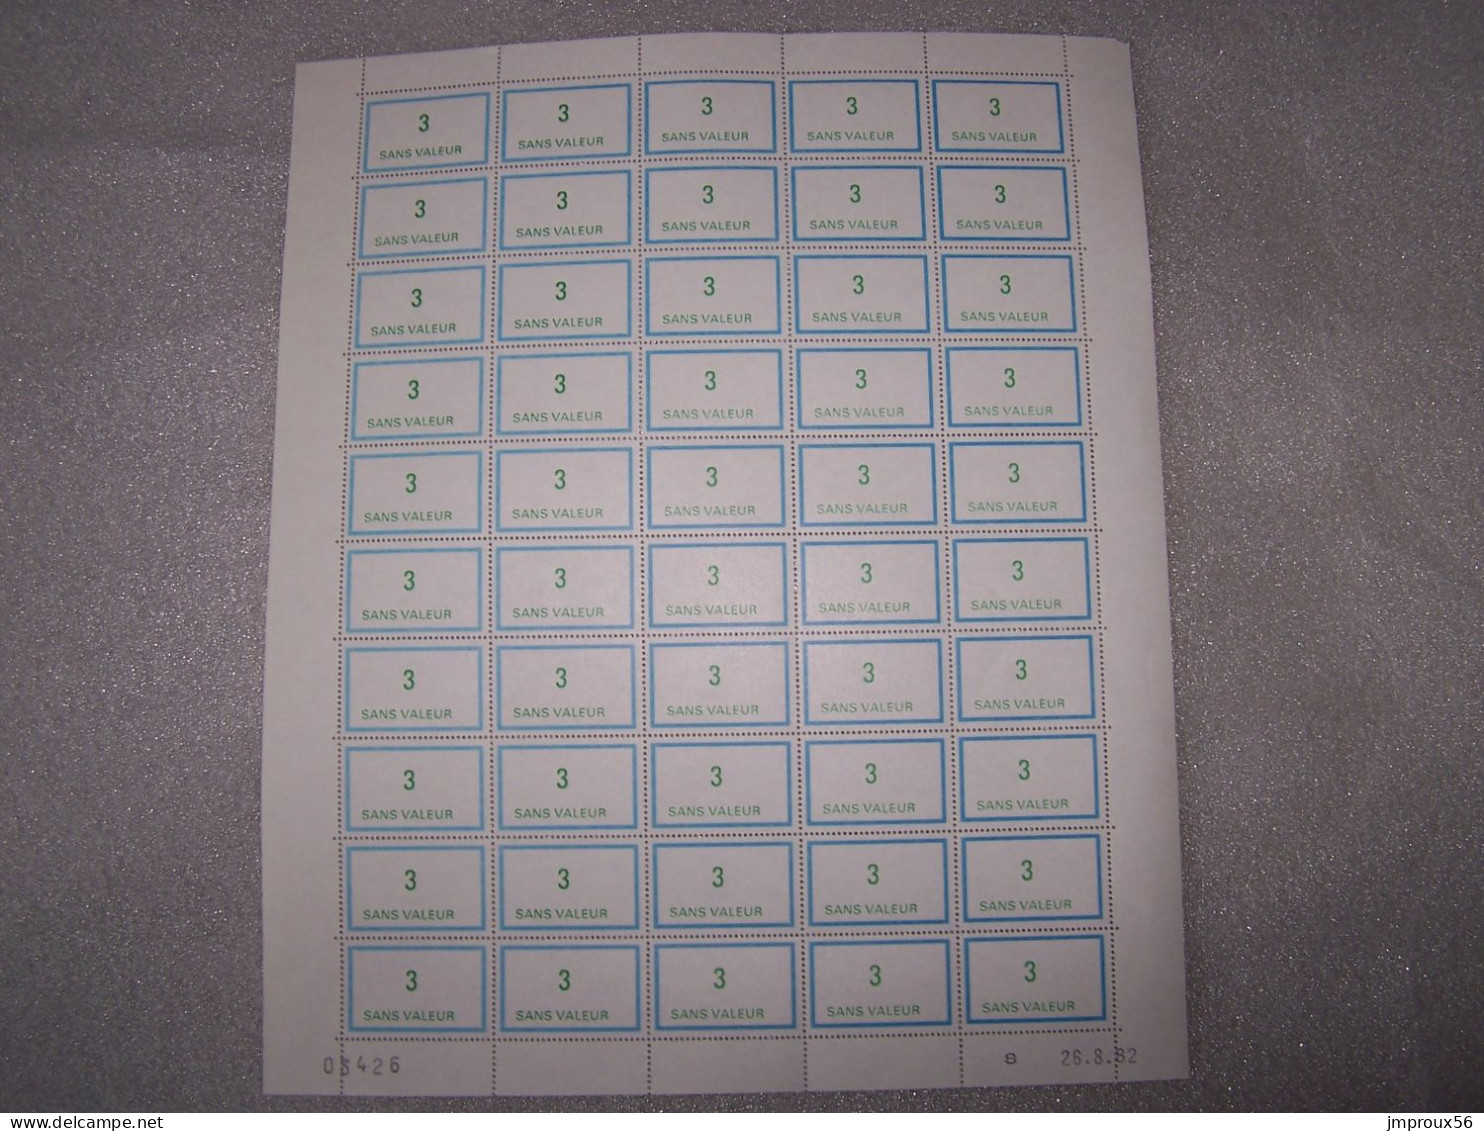 18 Feuilles timbres Fictifs pour l'instruction (F199,F211,F212,F215....)